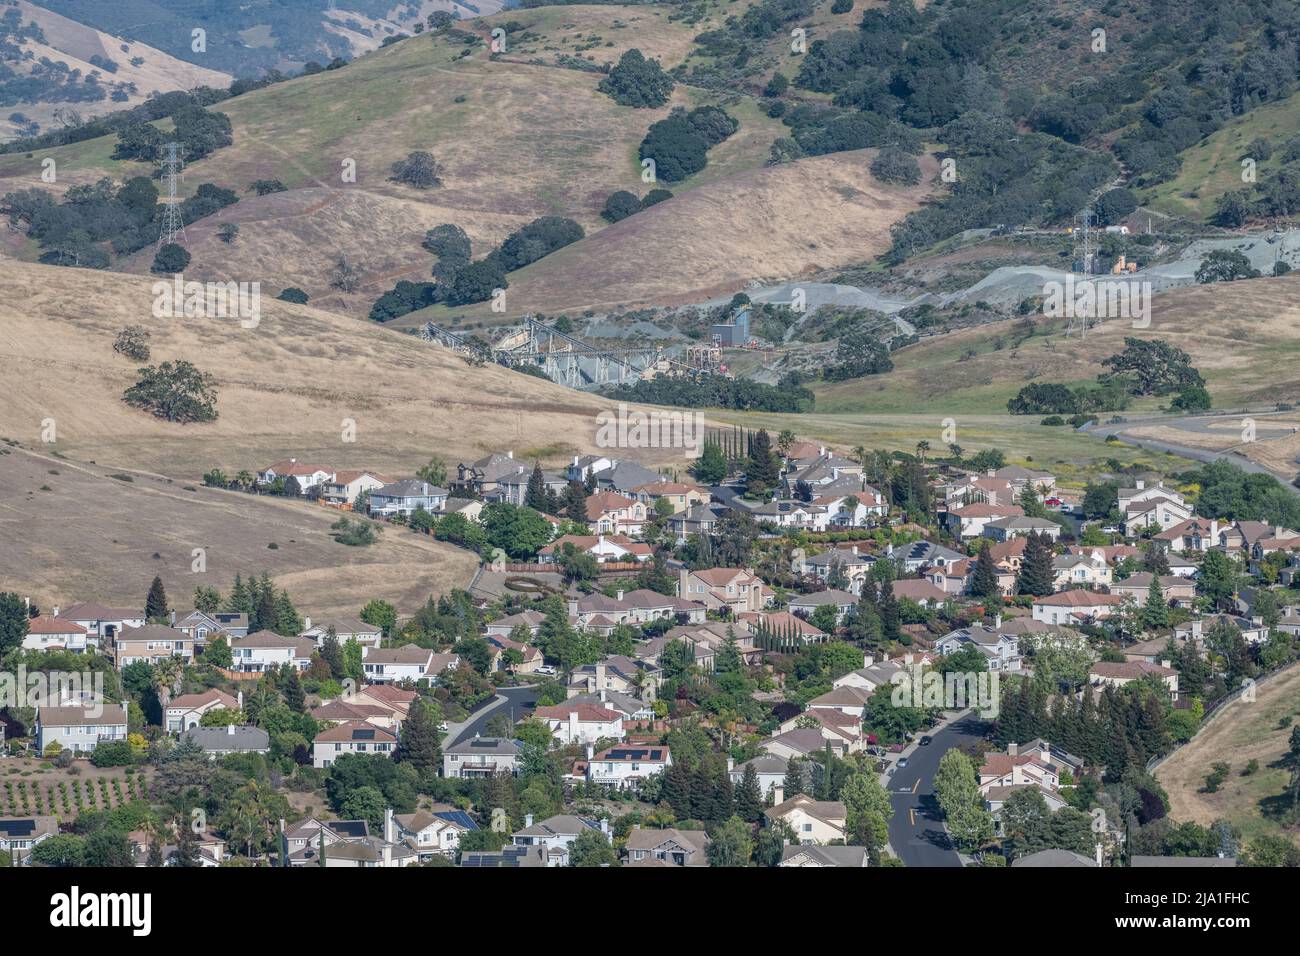 Un barrio residencial al este de la Bahía de San Francisco invade la ladera. Foto de stock